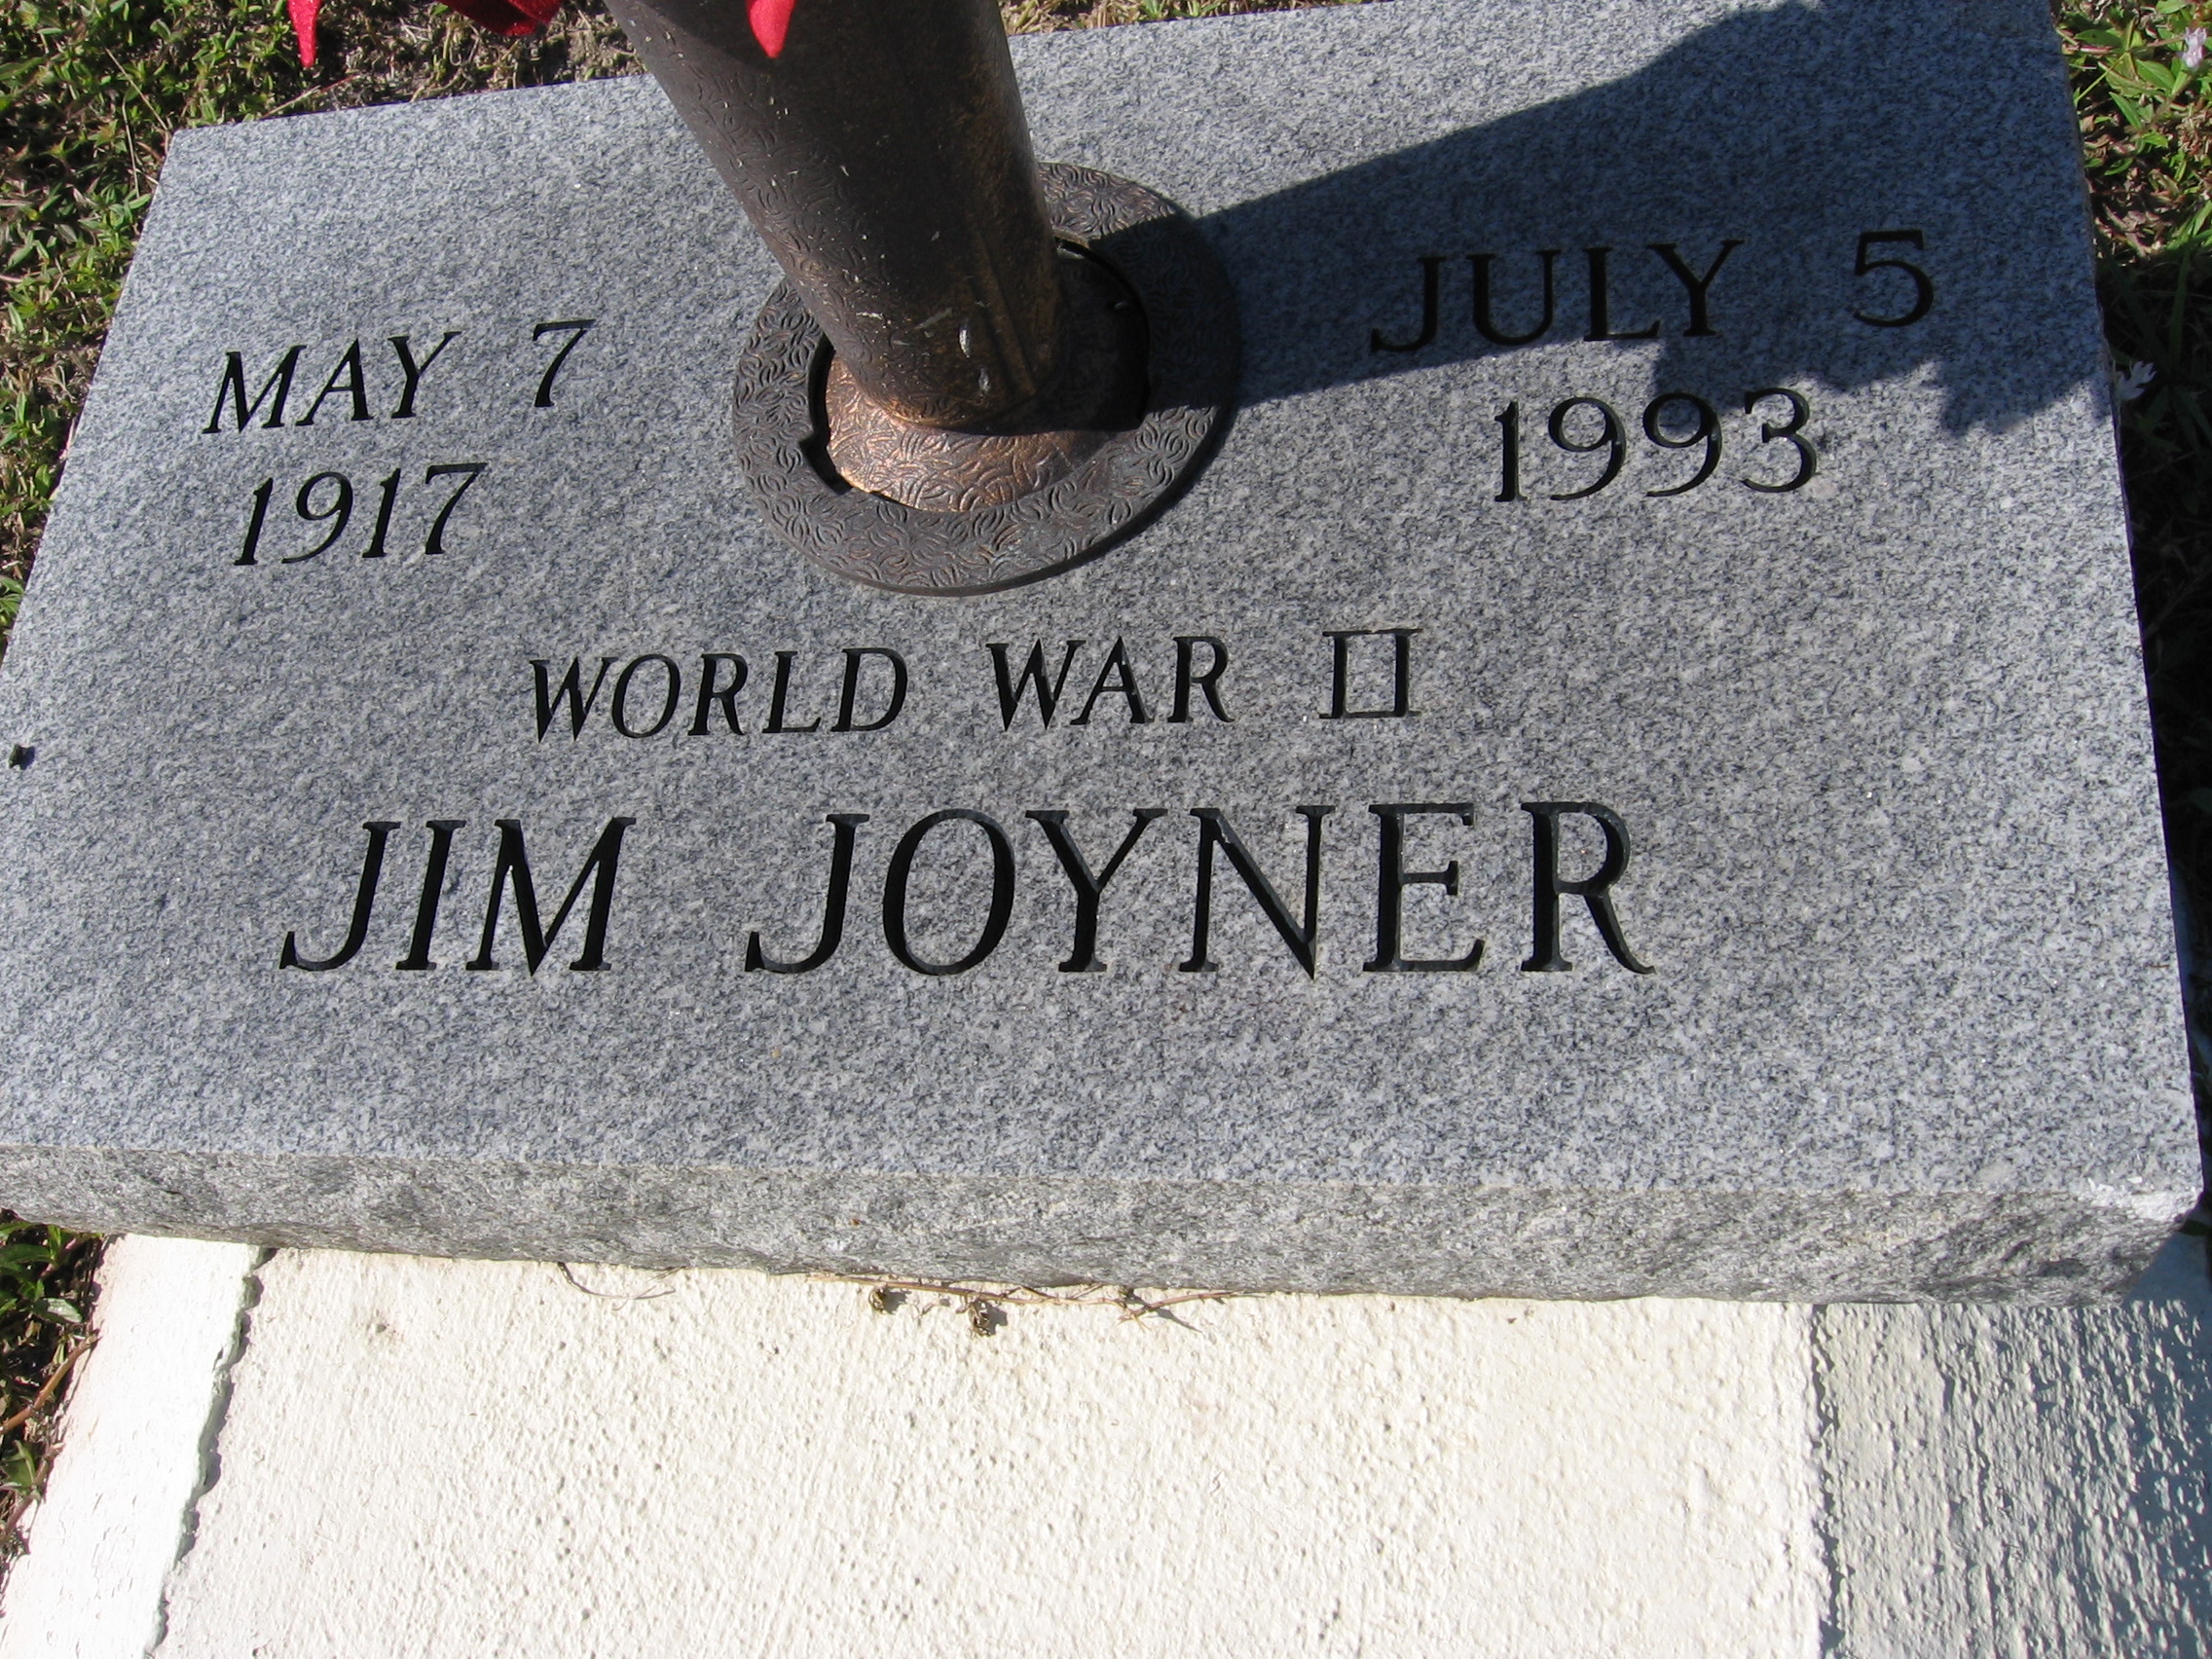 Jim Joyner